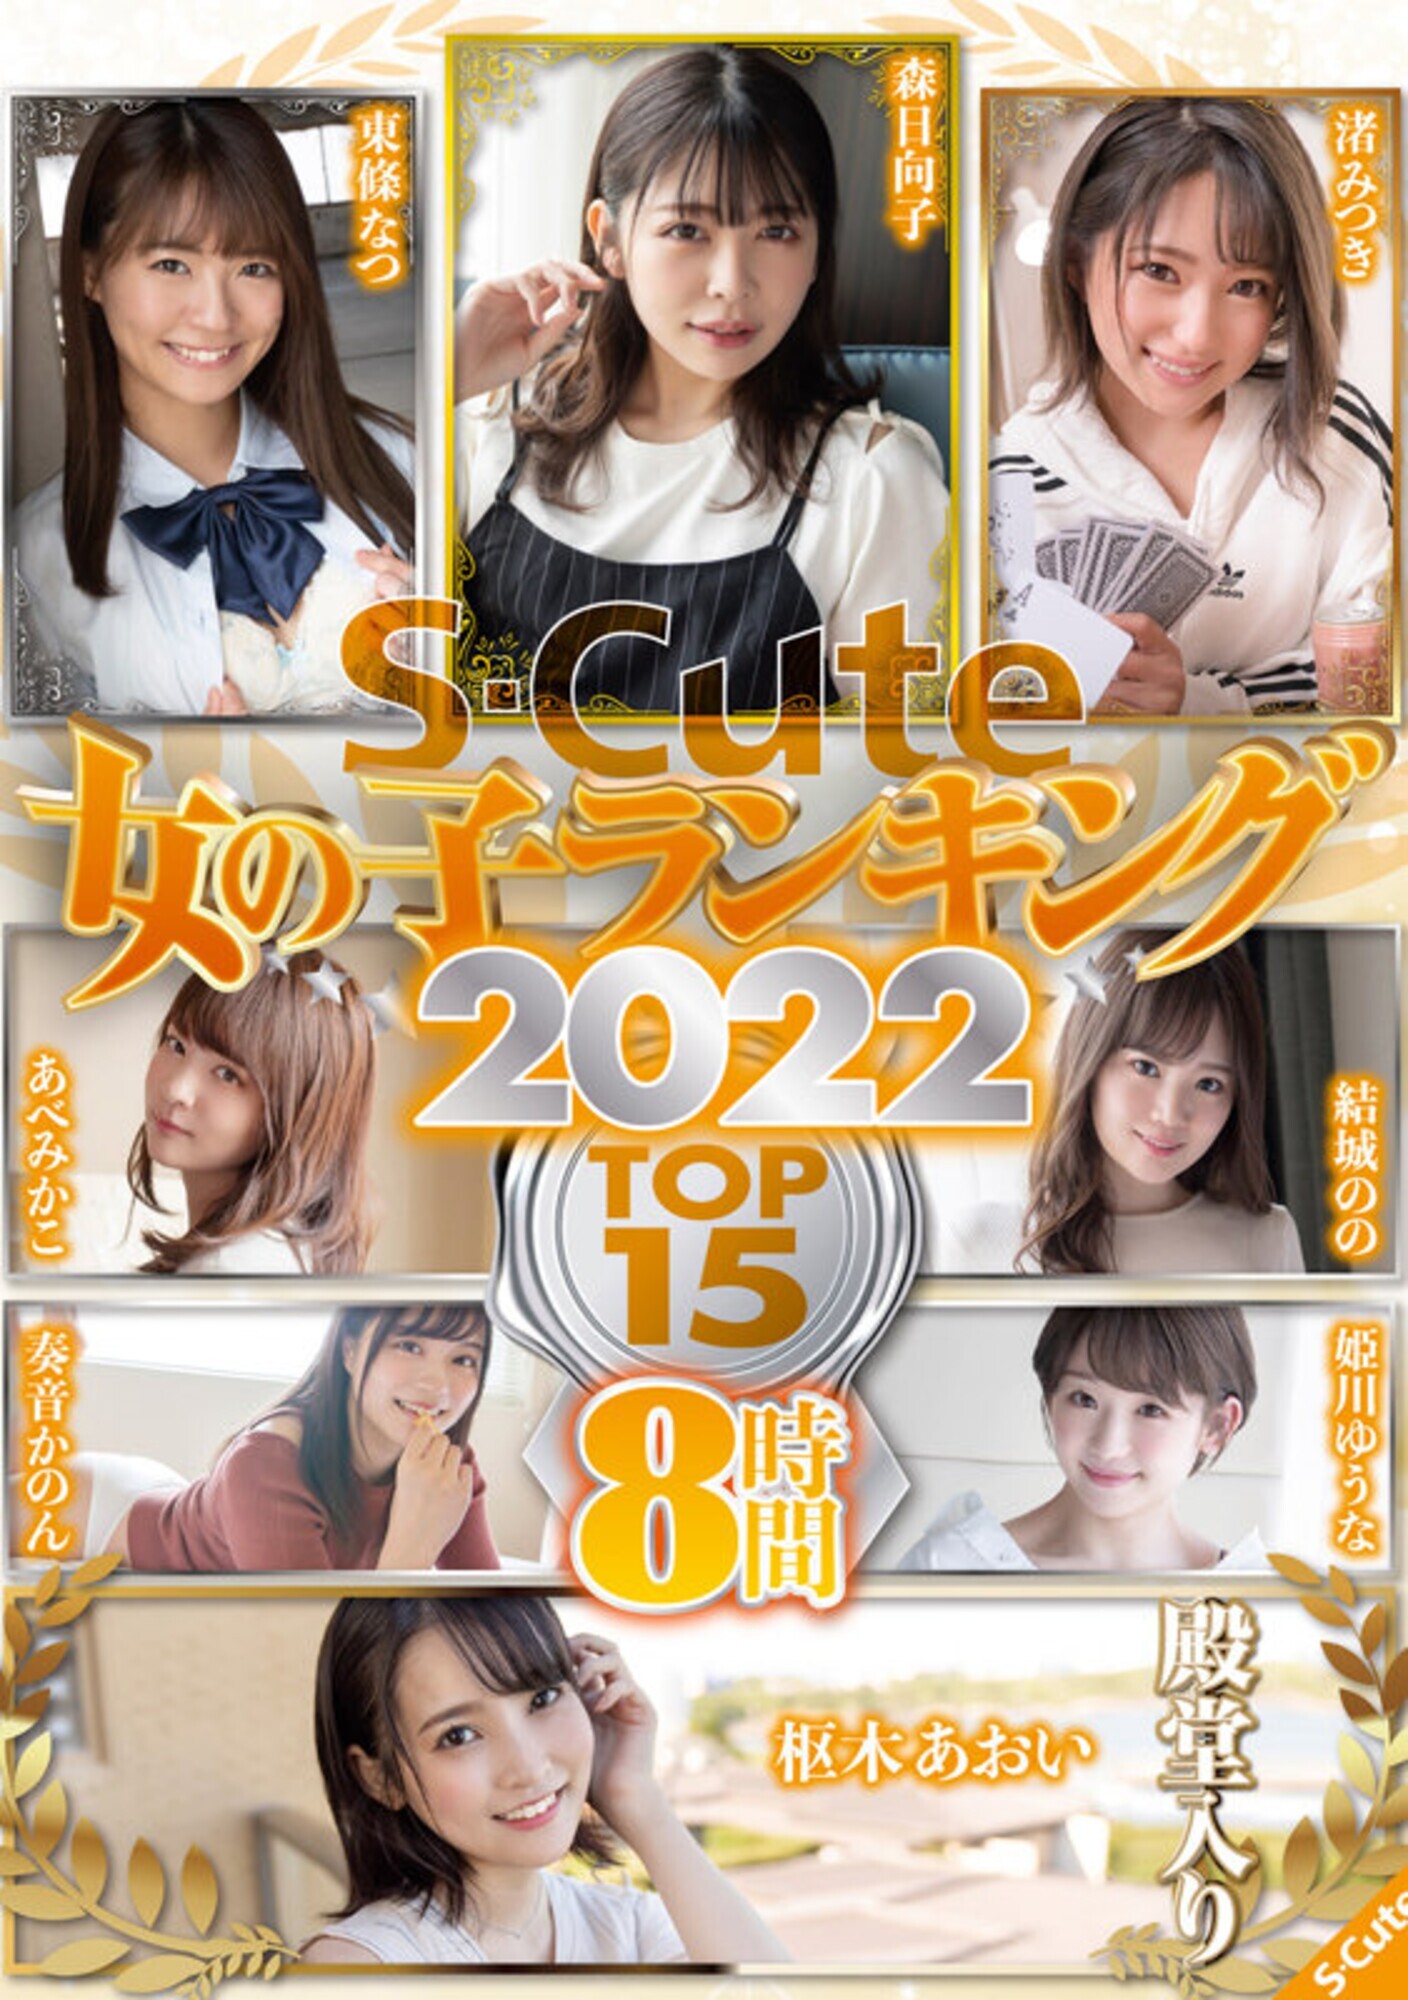 ★【オムニバス】S-Cute 女の子ランキング2022 TOP15 8時間